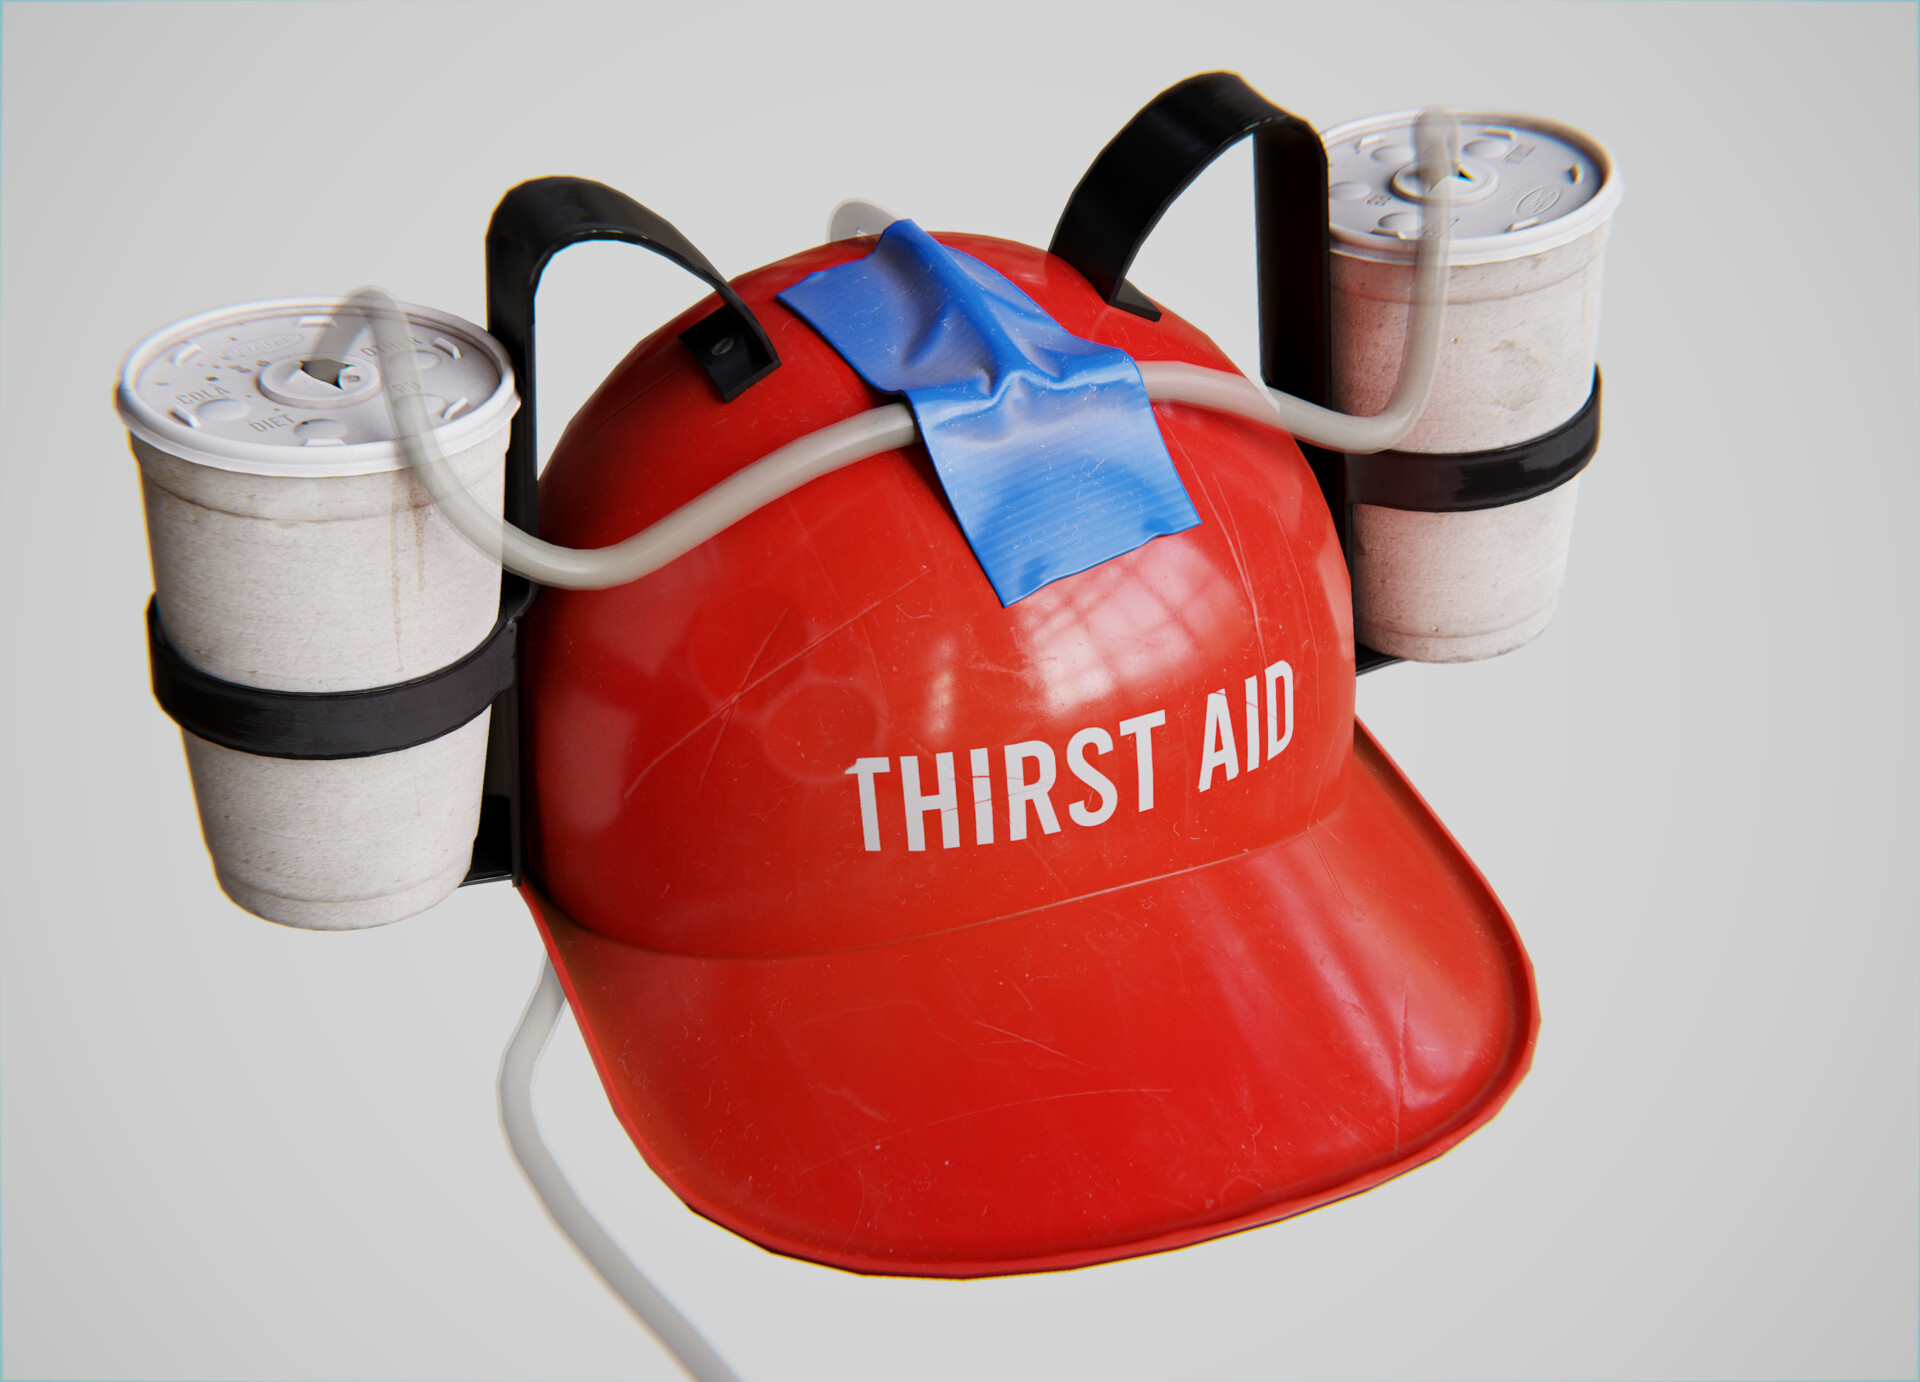 Thirst Aid Beer Helmet